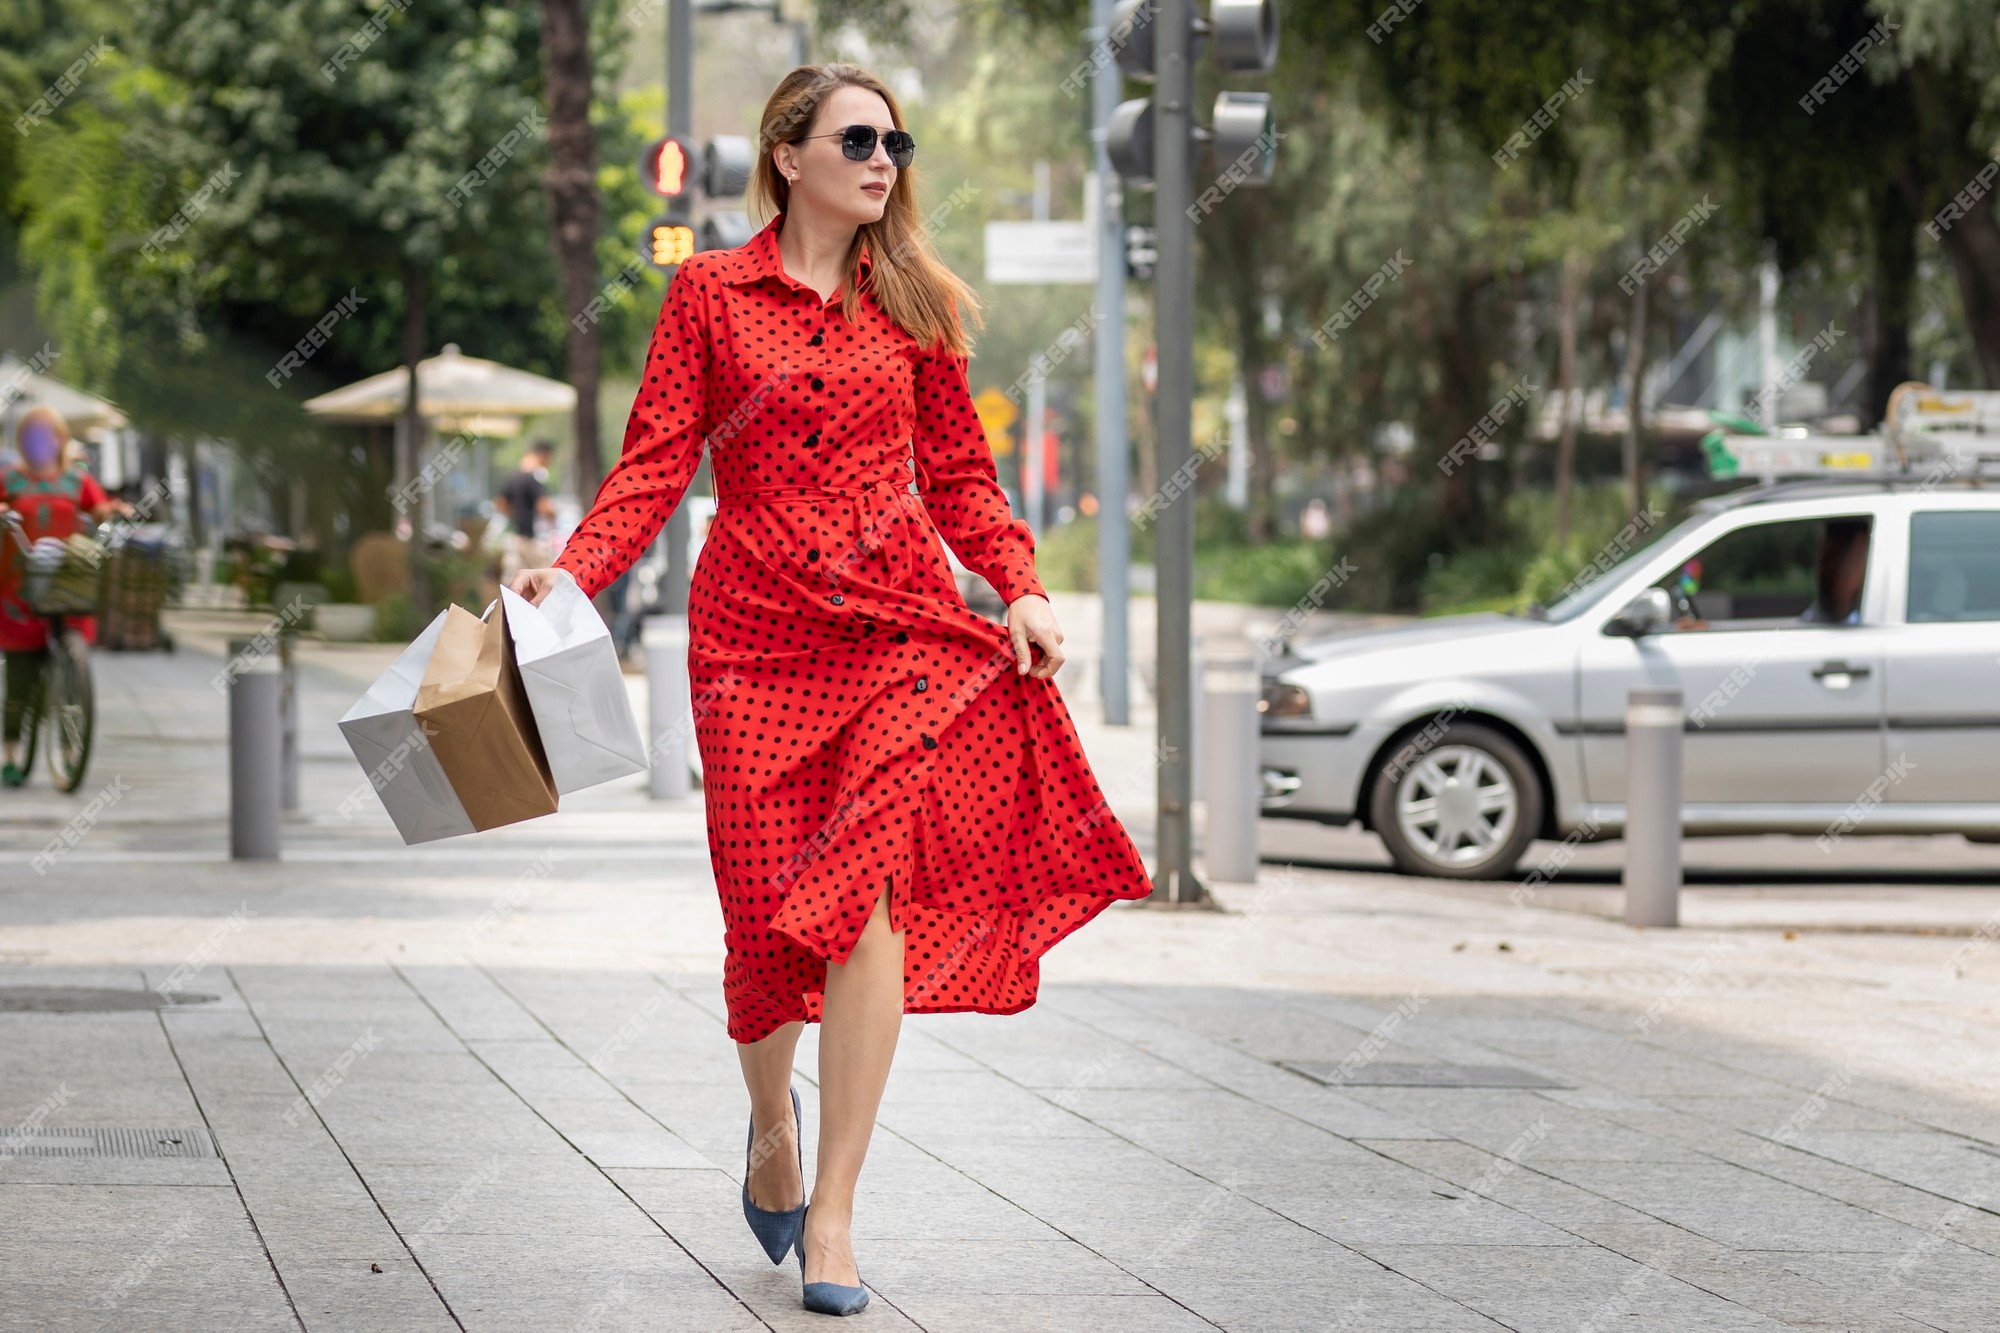 Hermosa mujer en vestido rojo verano caminando alegremente sonriendo por la calle mientras hace compras llevando sus bolsas. | Foto Premium